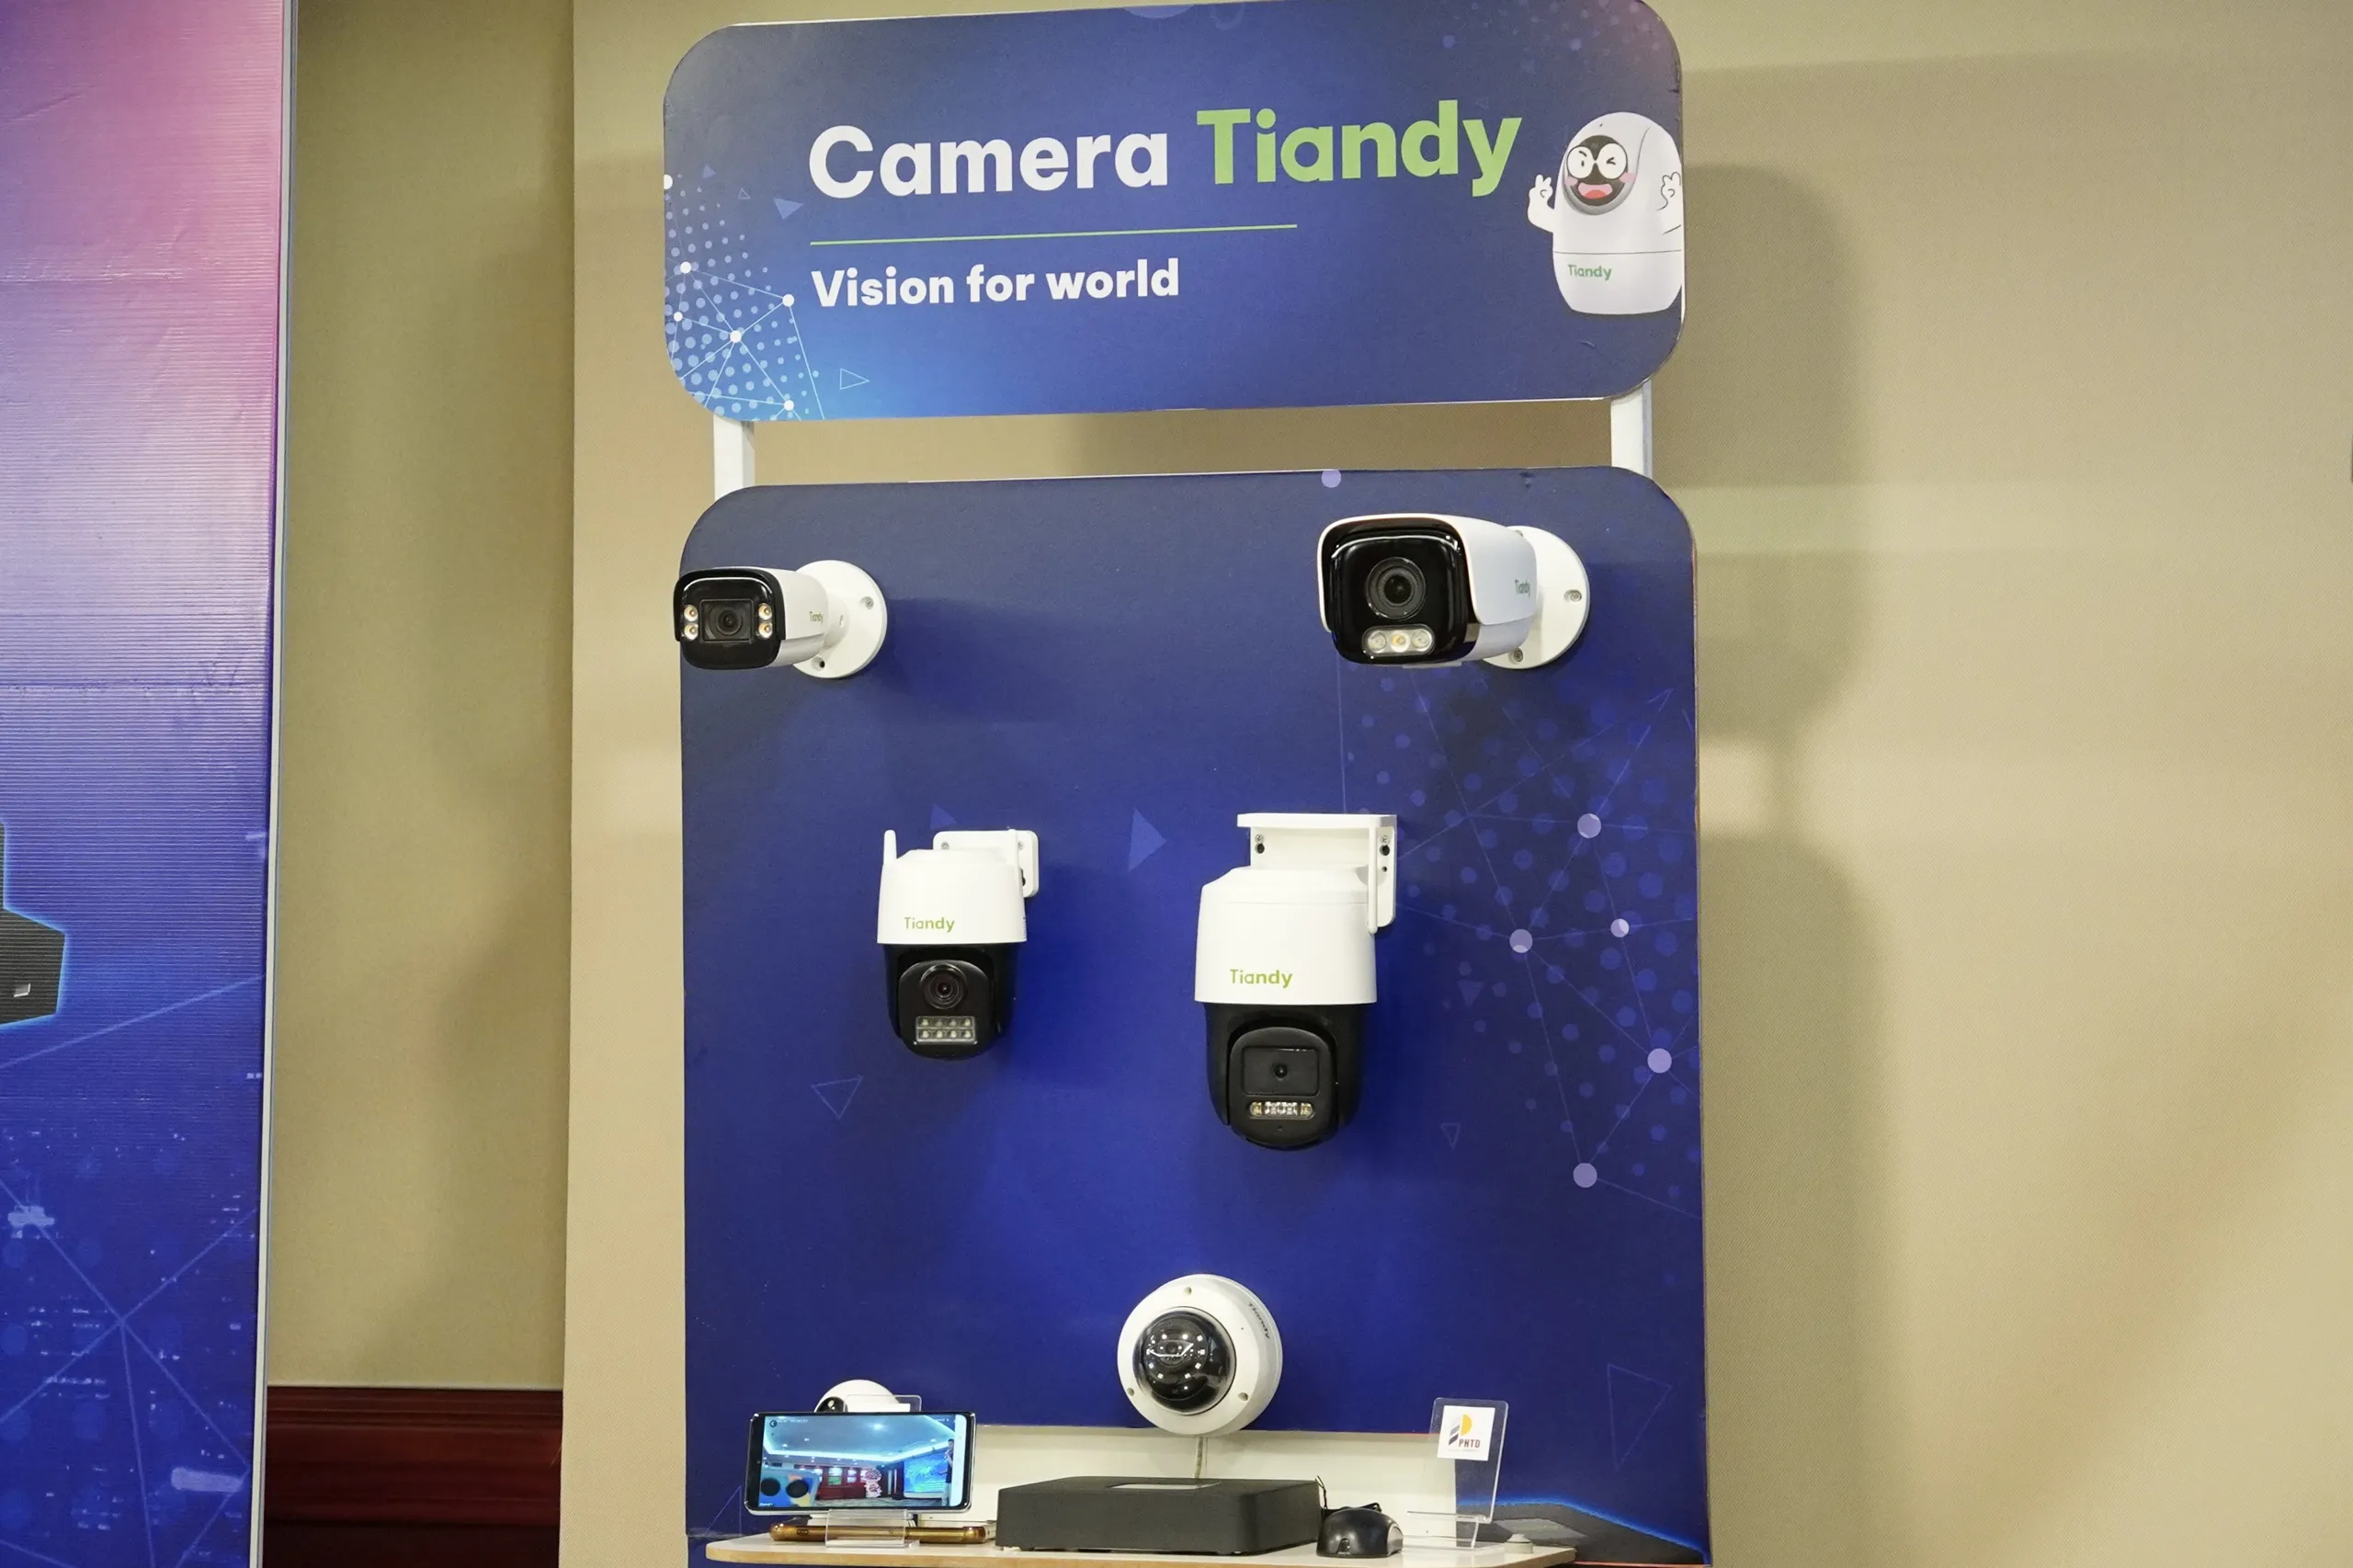 Ra mắt thương hiệu camera Tiandy tại Việt Nam